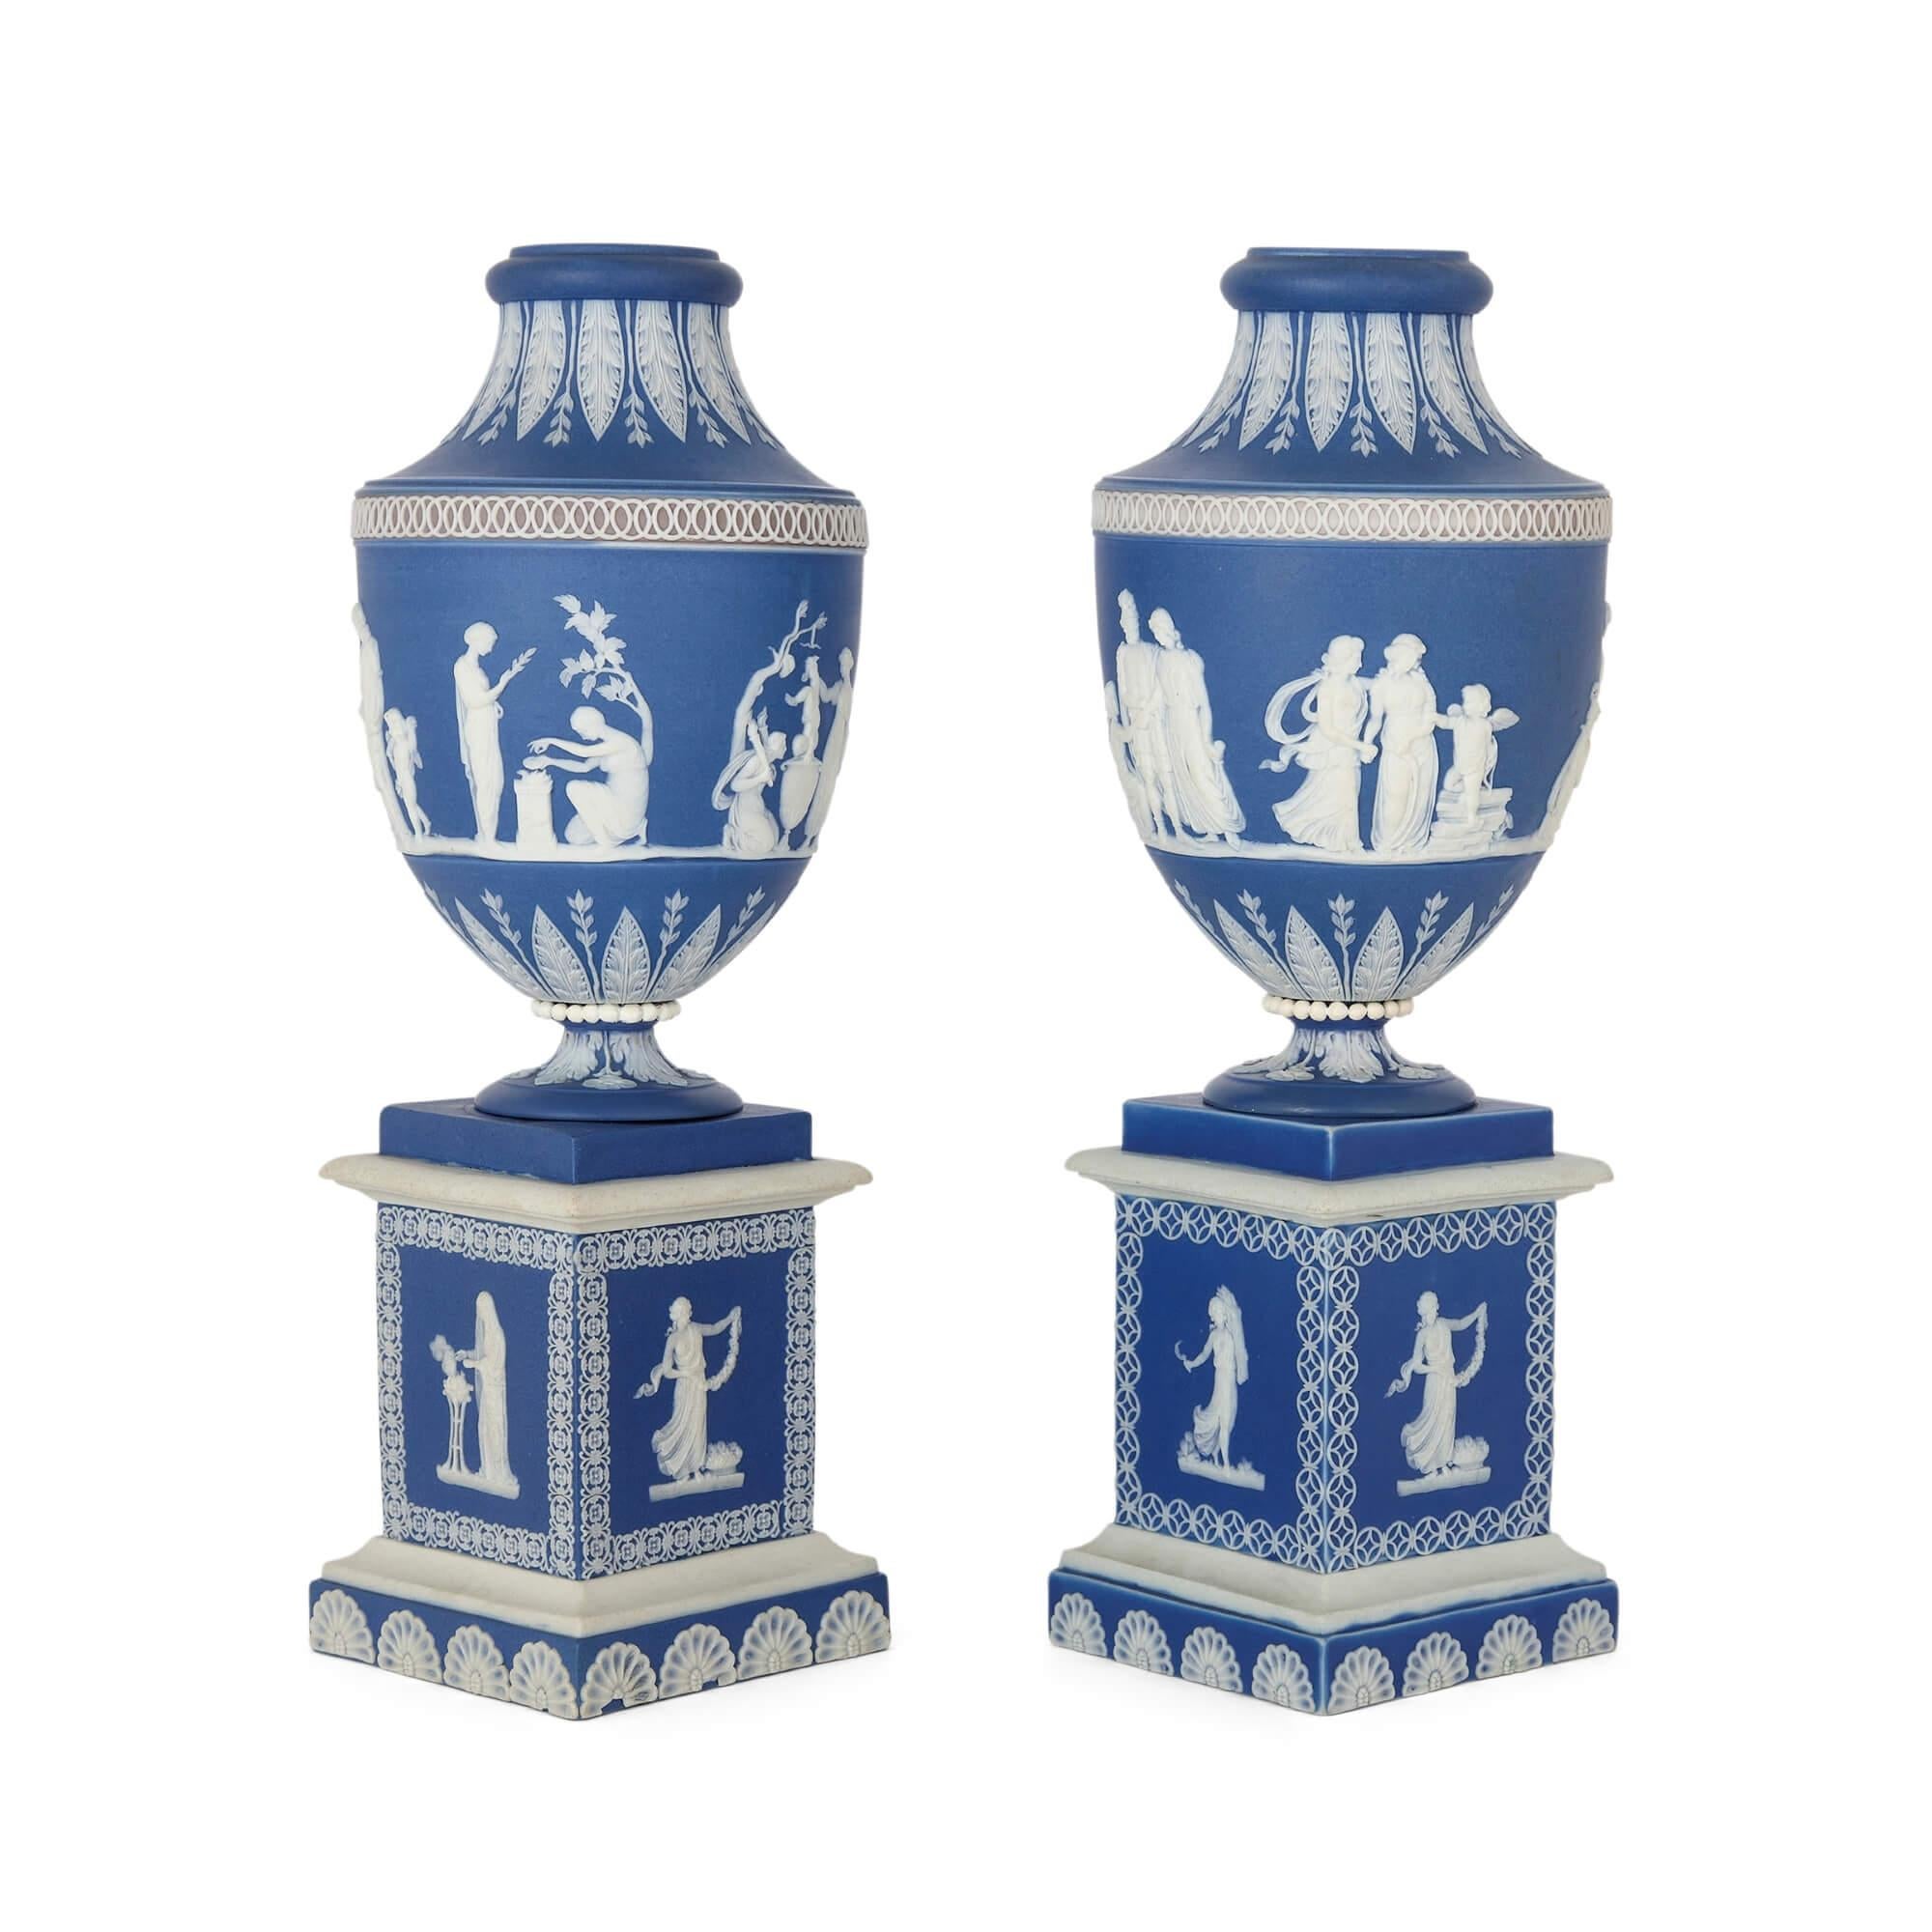 Paar antike Jaspisvasen von Adams Pottery, um 1780
Englisch, um 1780
Höhe 27cm, Durchmesser 10cm

Dieses bemerkenswerte Paar blauer Jaspisvasen im neoklassischen Stil ist ein Zeugnis der erhabenen Kunstfertigkeit und Raffinesse von William Adams,